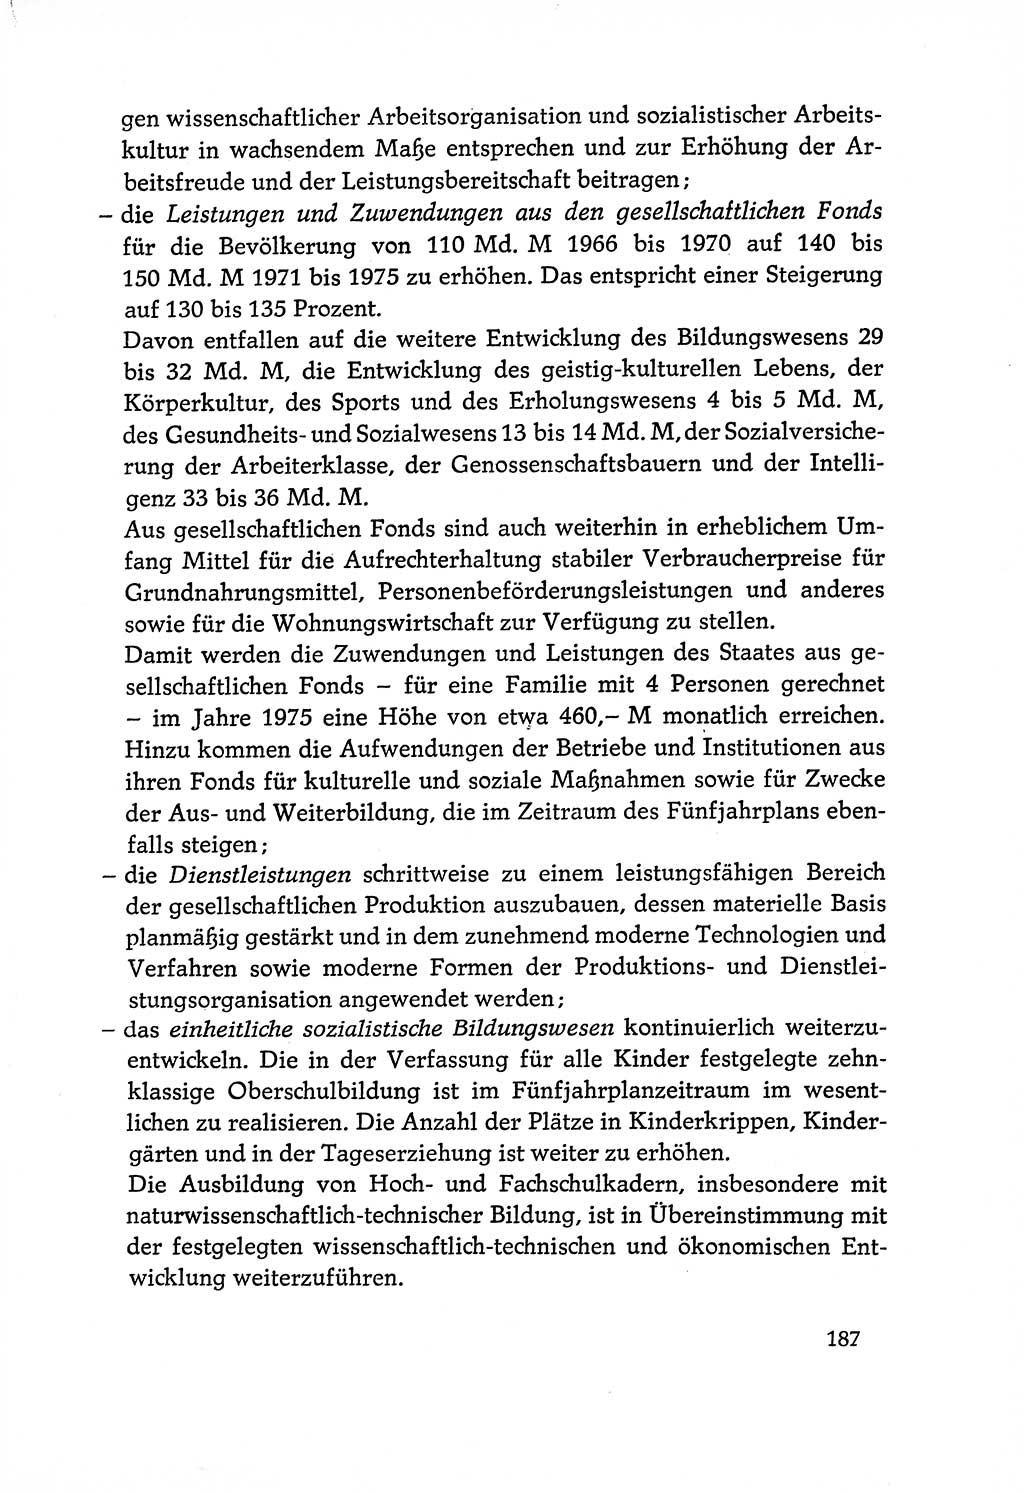 Dokumente der Sozialistischen Einheitspartei Deutschlands (SED) [Deutsche Demokratische Republik (DDR)] 1970-1971, Seite 187 (Dok. SED DDR 1970-1971, S. 187)